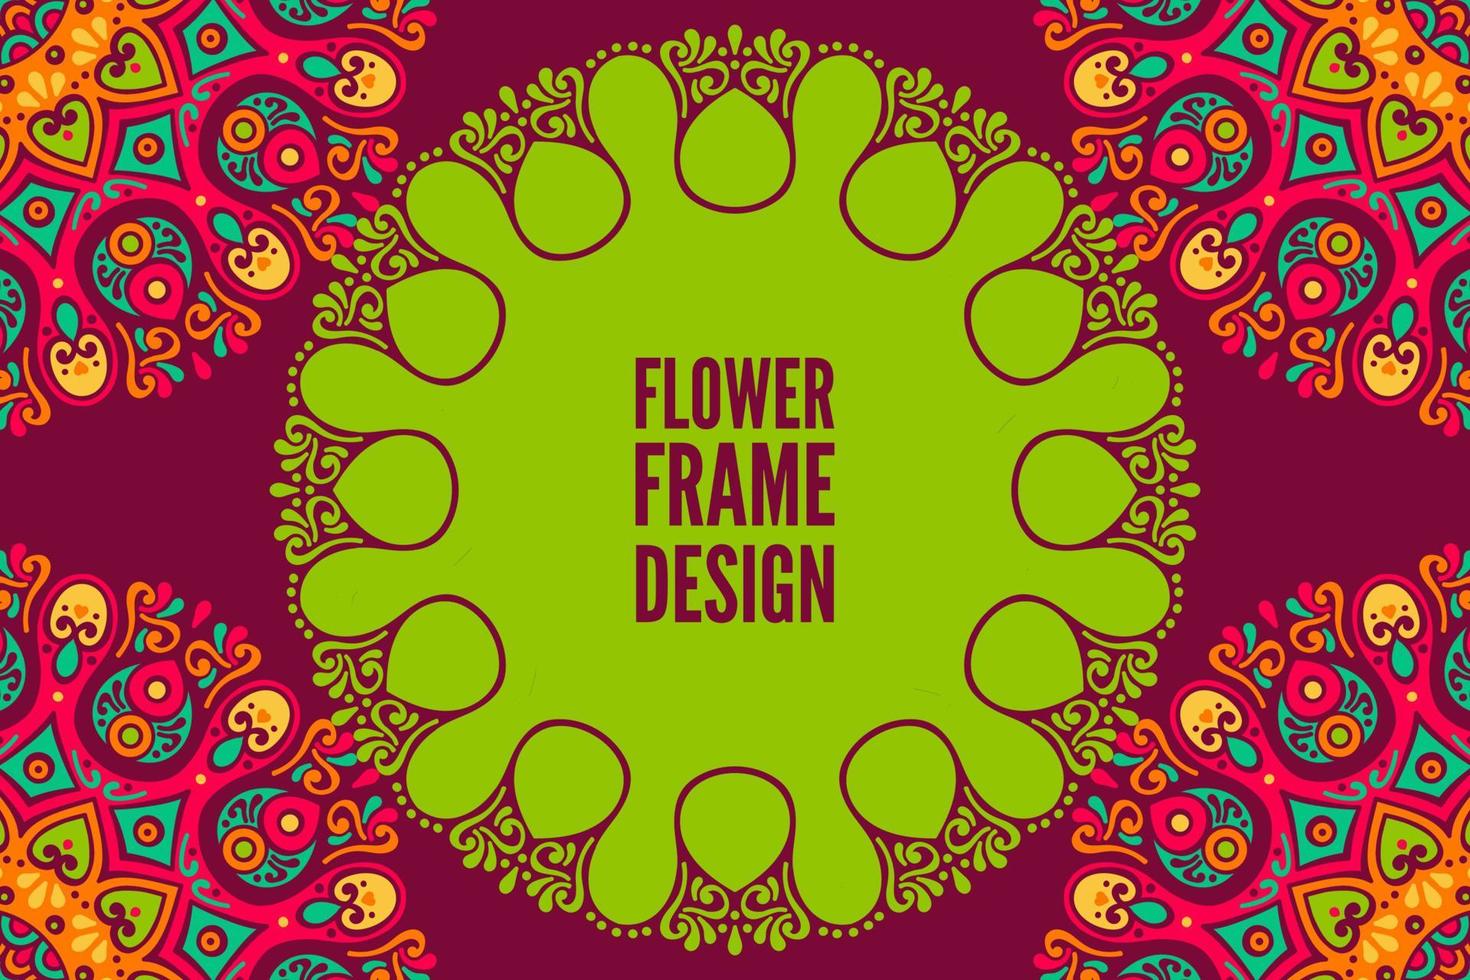 Flower frame design with mandala vector